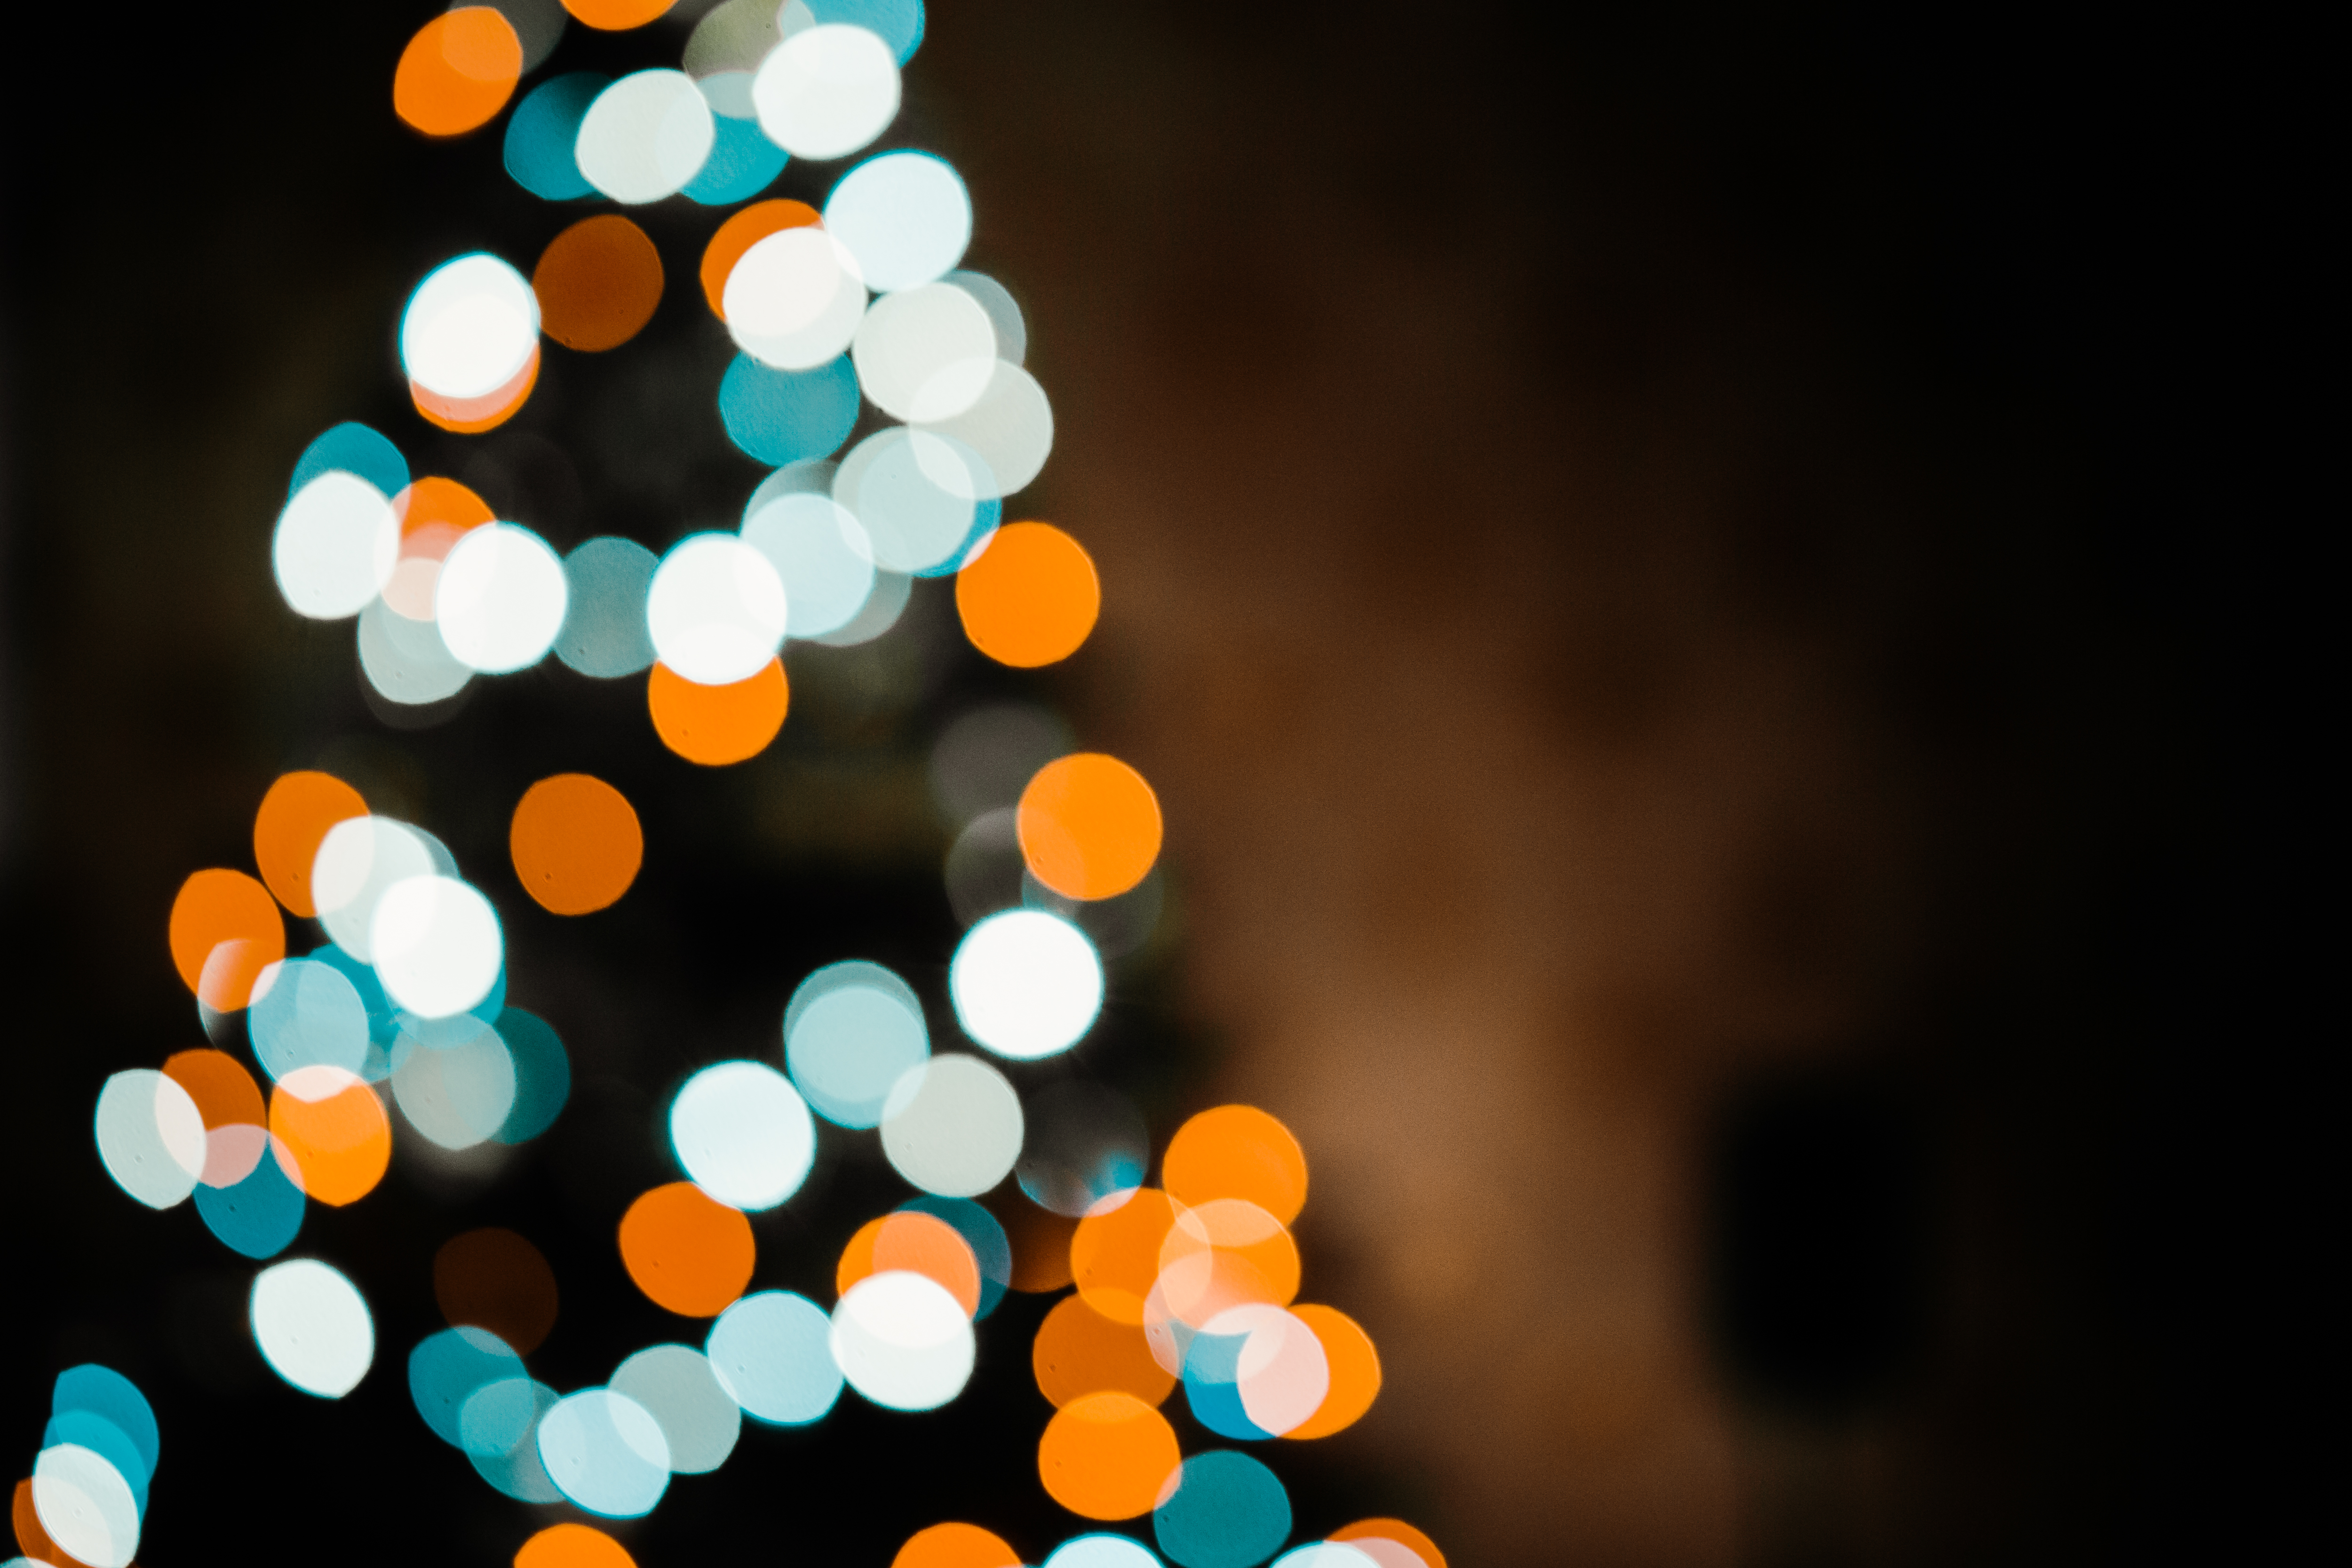 blurred christmas lights